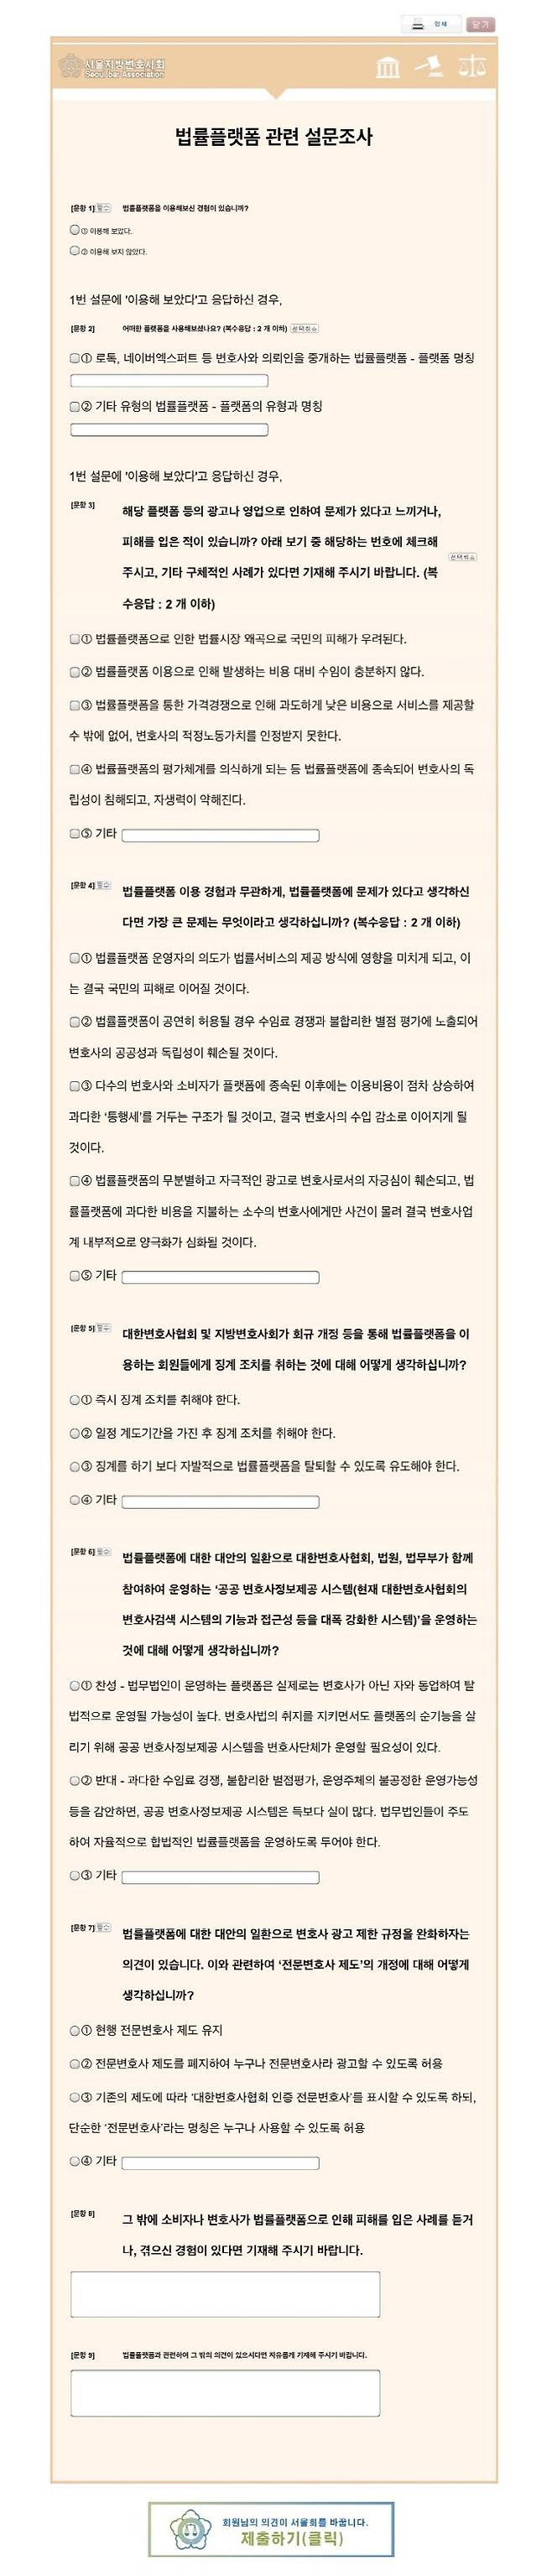 ‘유도 설문’ 논란에 휩싸인 서울변협 설문지